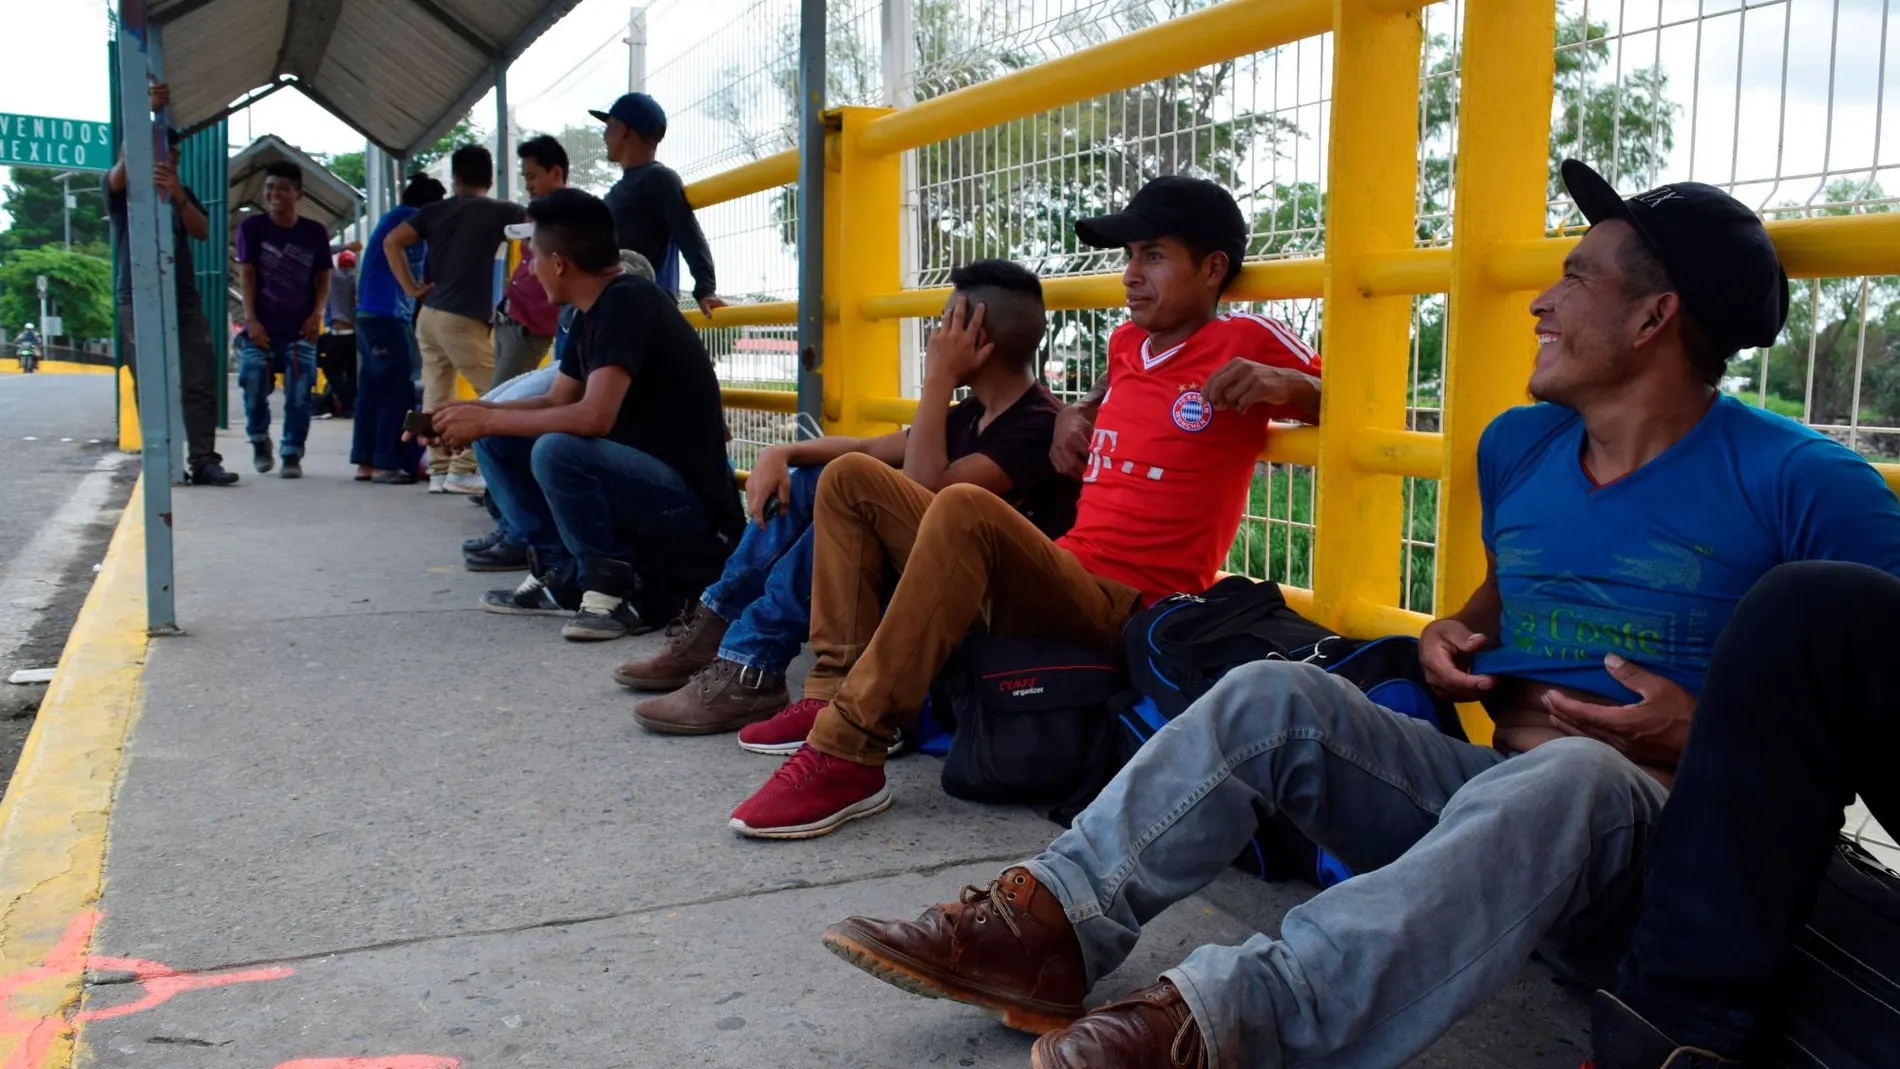 México mantiene la “alerta consular permanente” por la amenaza de redadas contra migrantes